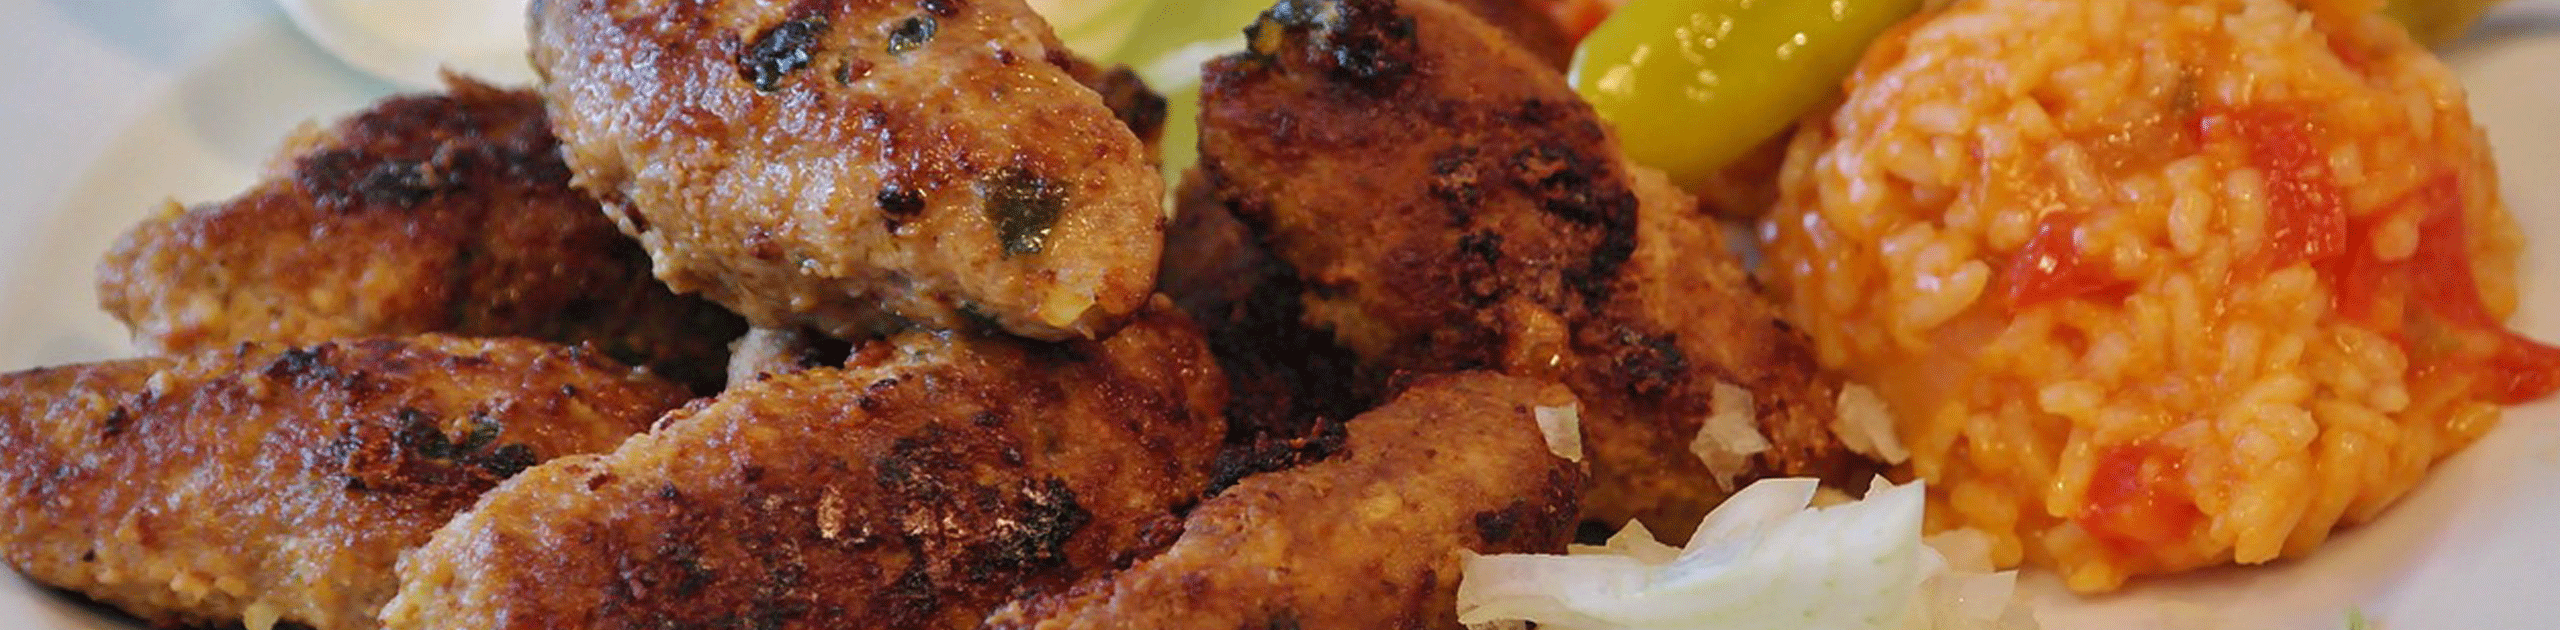 Cevapcici, Reis und Salat auf Teller, Foto: Pixabay